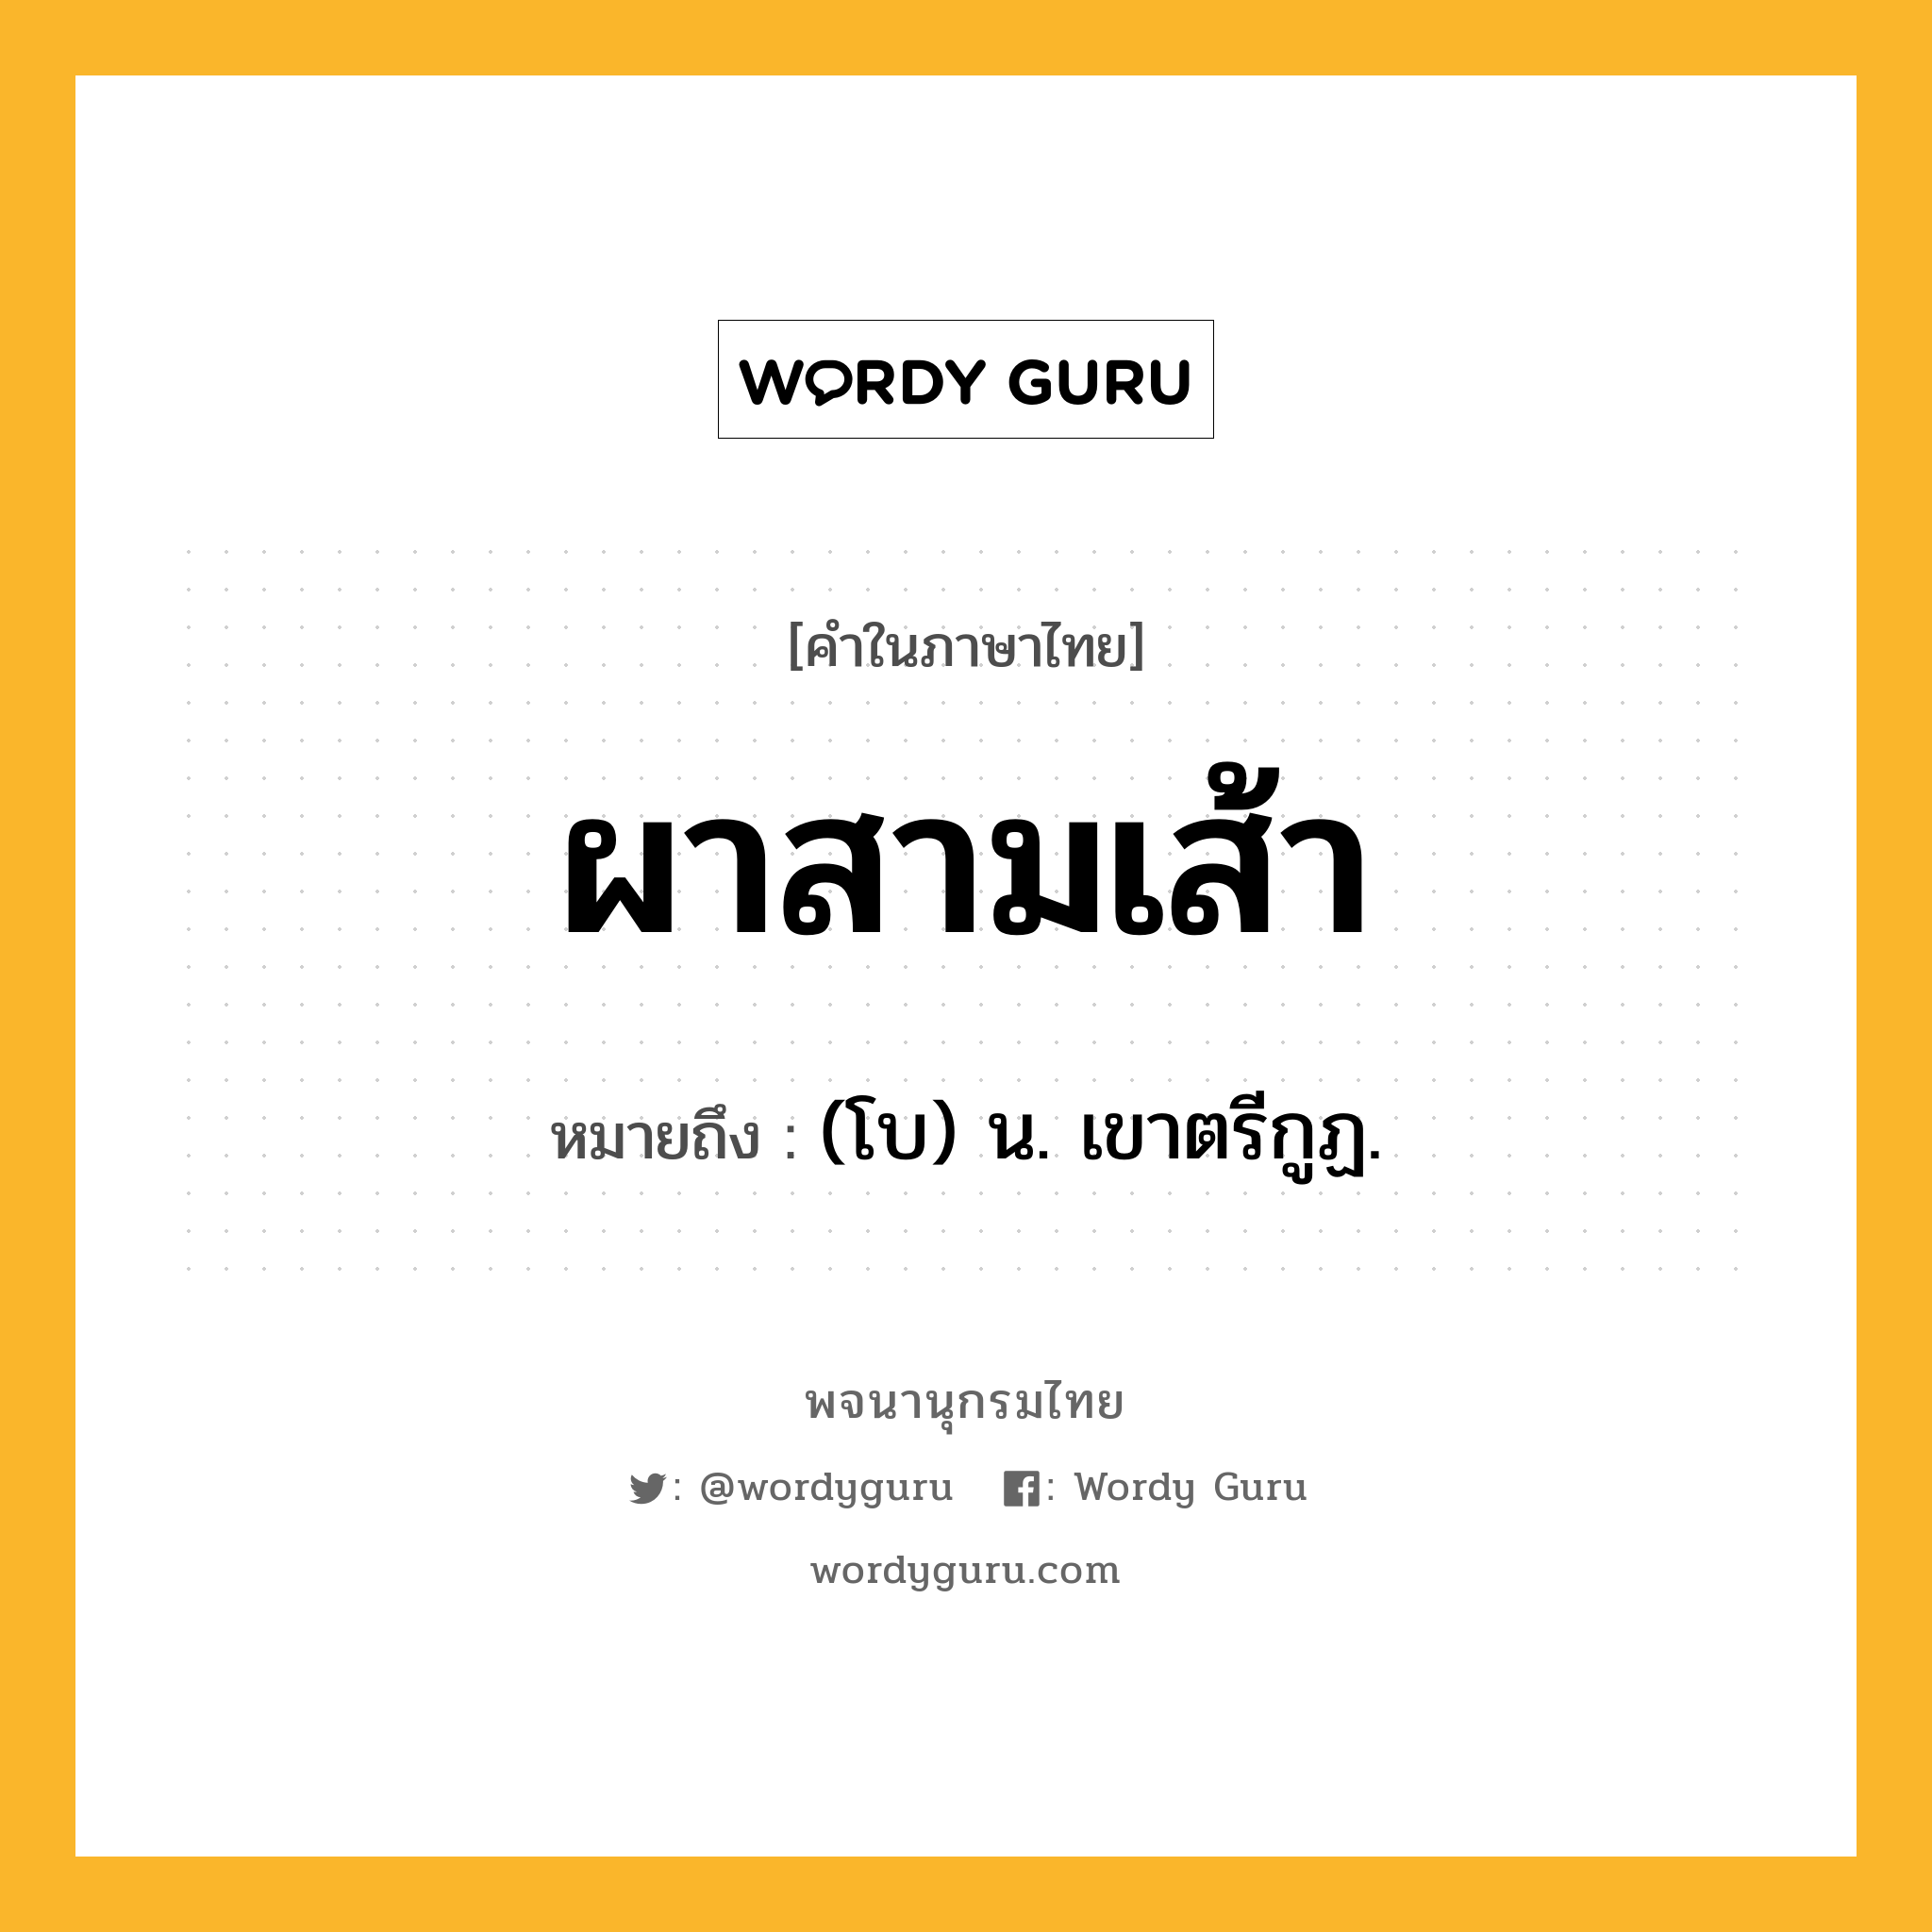 ผาสามเส้า หมายถึงอะไร?, คำในภาษาไทย ผาสามเส้า หมายถึง (โบ) น. เขาตรีกูฏ.